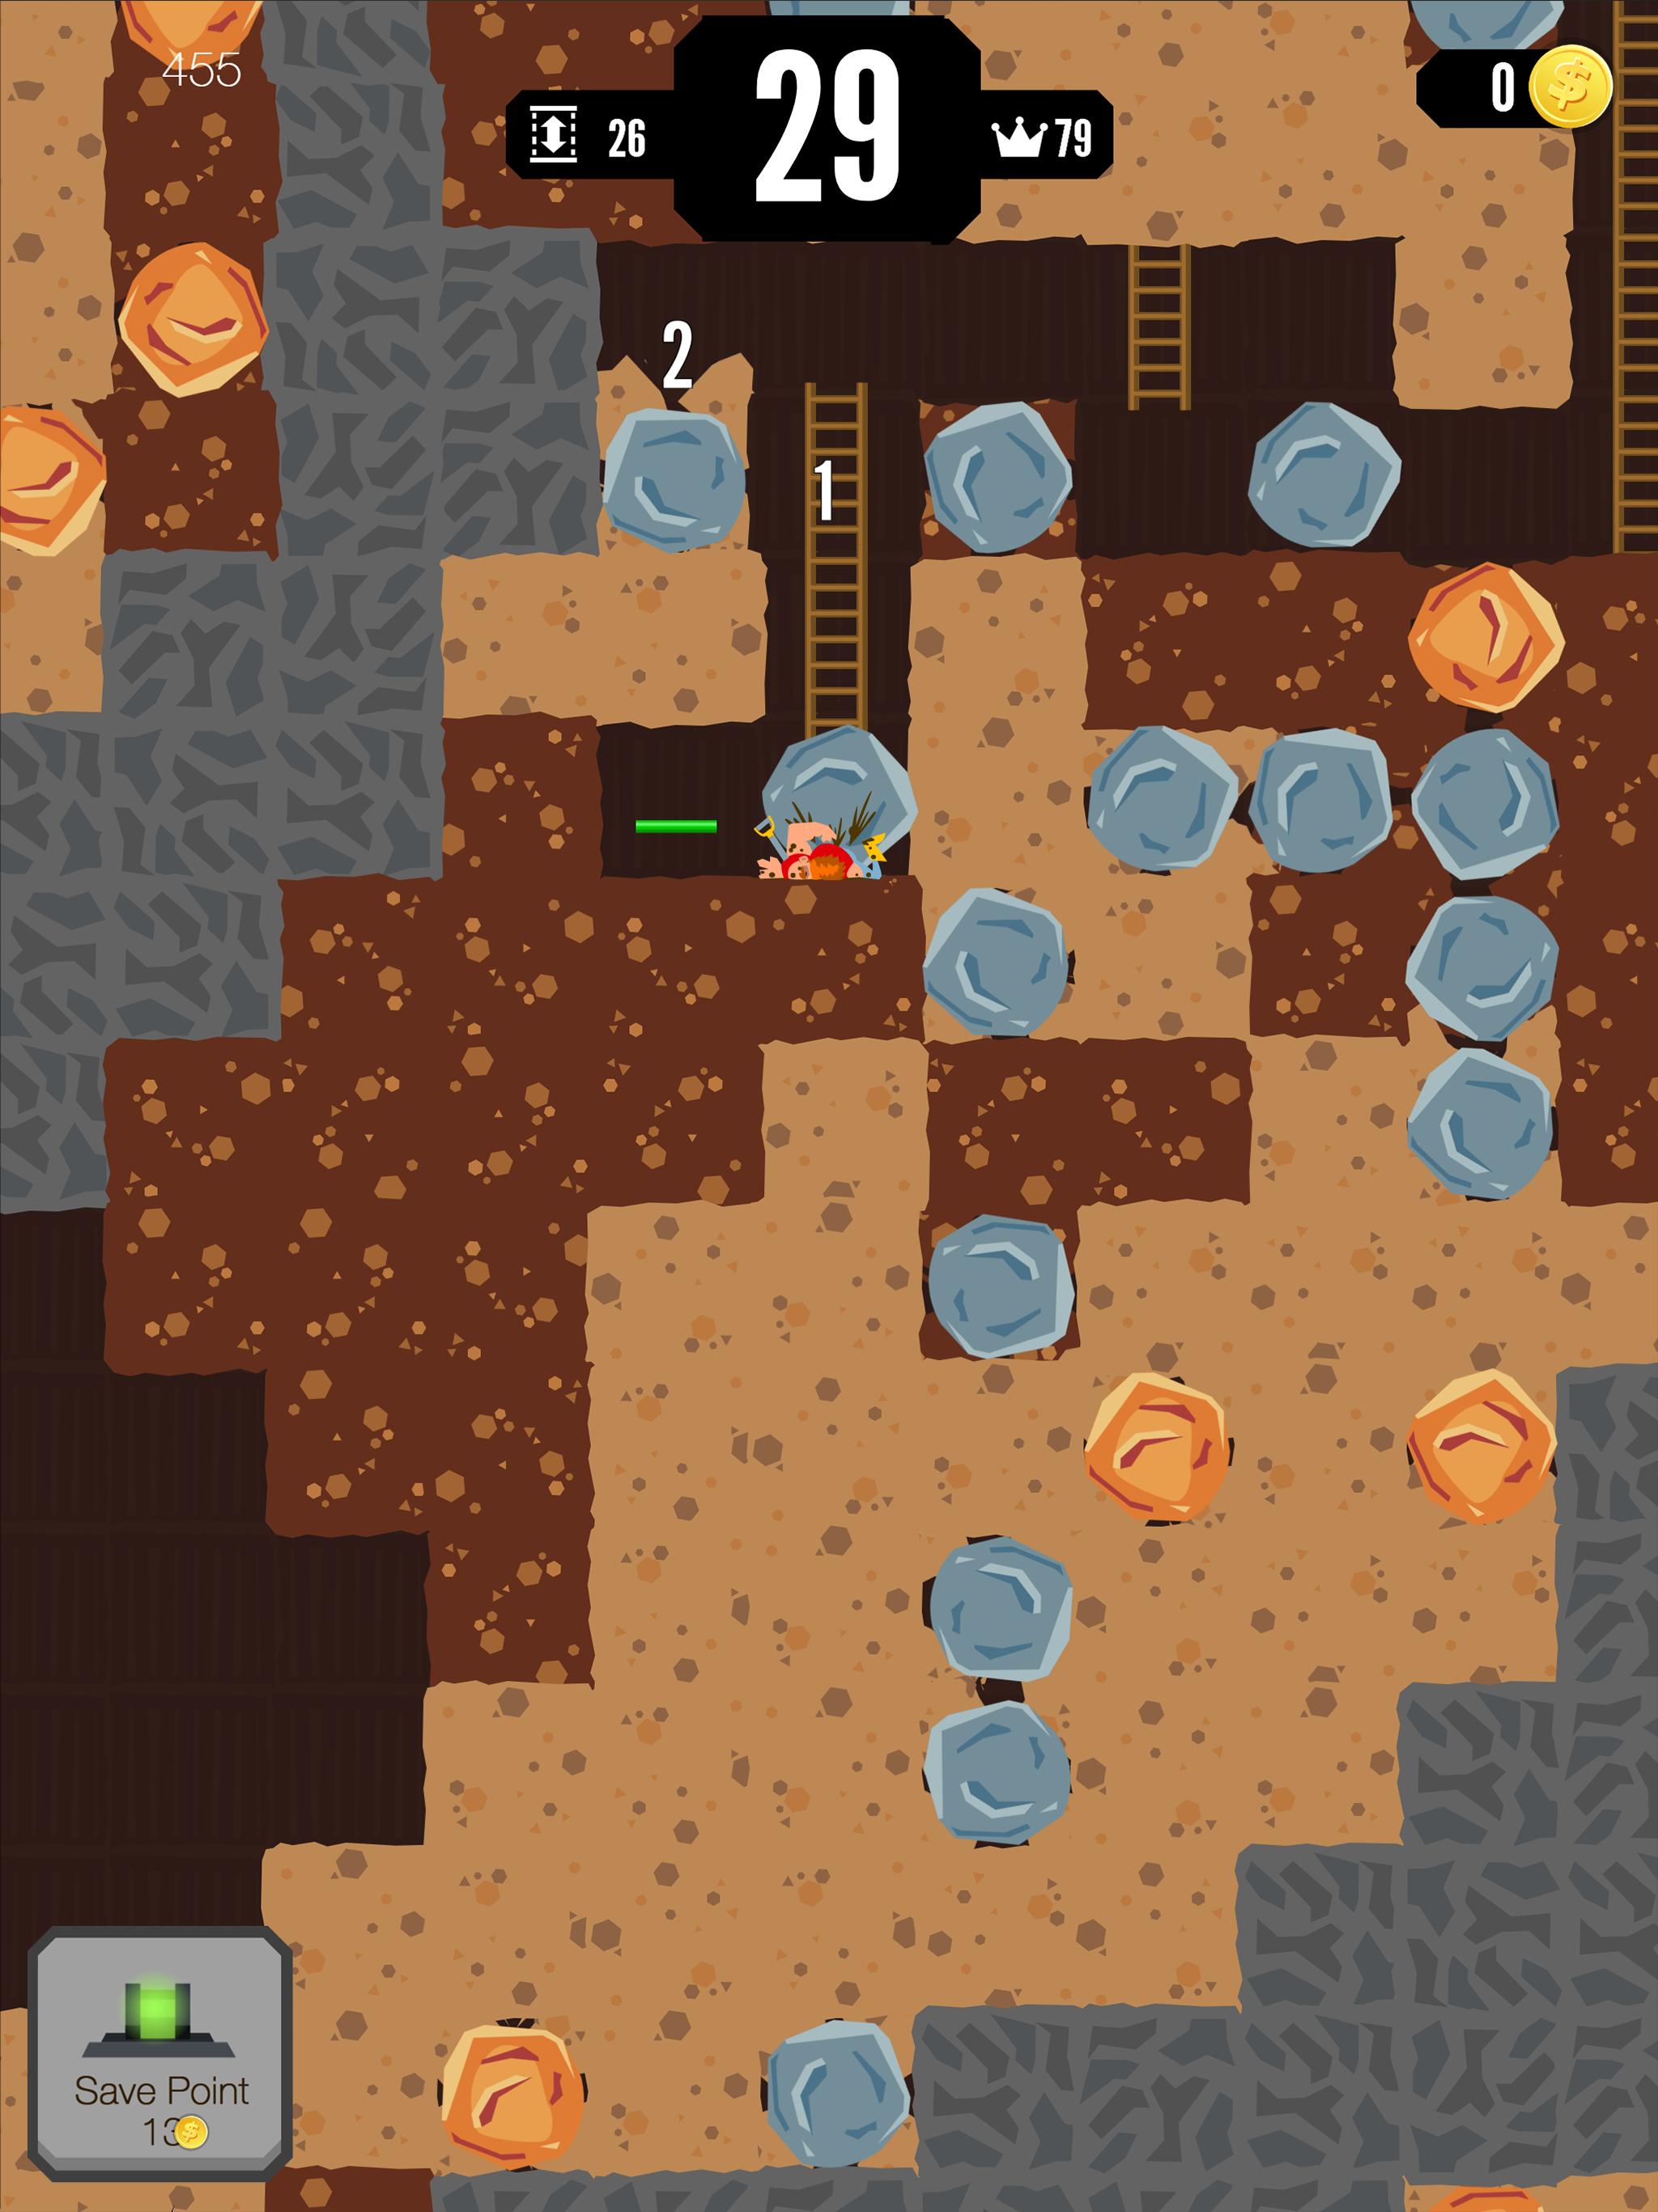 Gold Digger FRVR Mine Puzzle 1.9.5 Screenshot 24